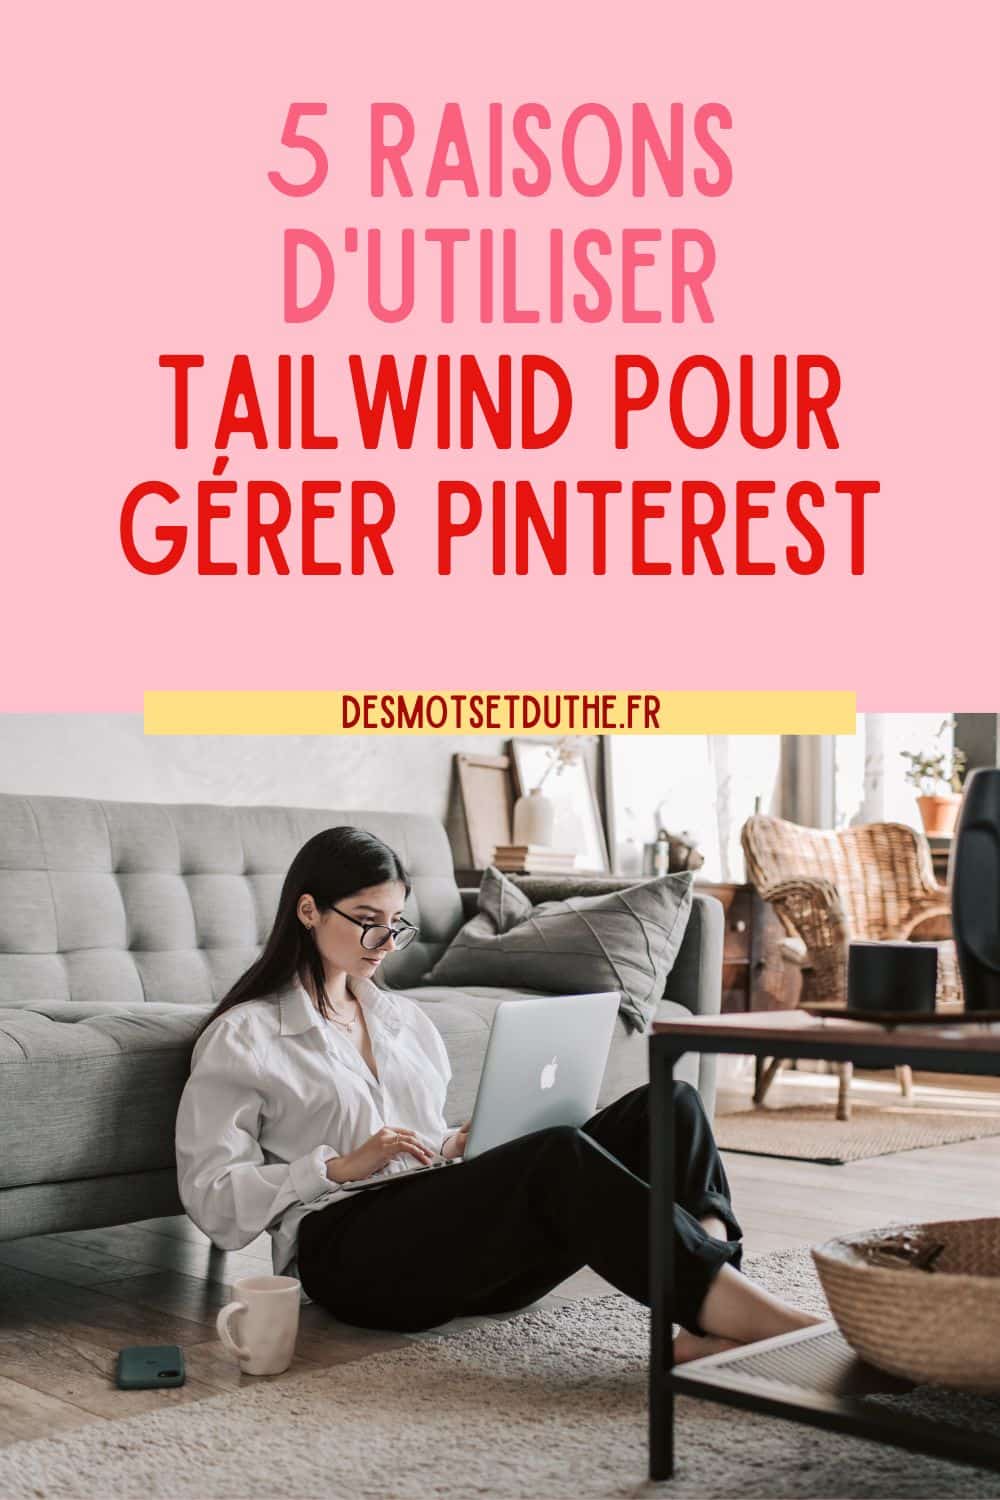 5 raisons d'utiliser Tailwind pour Pinterest